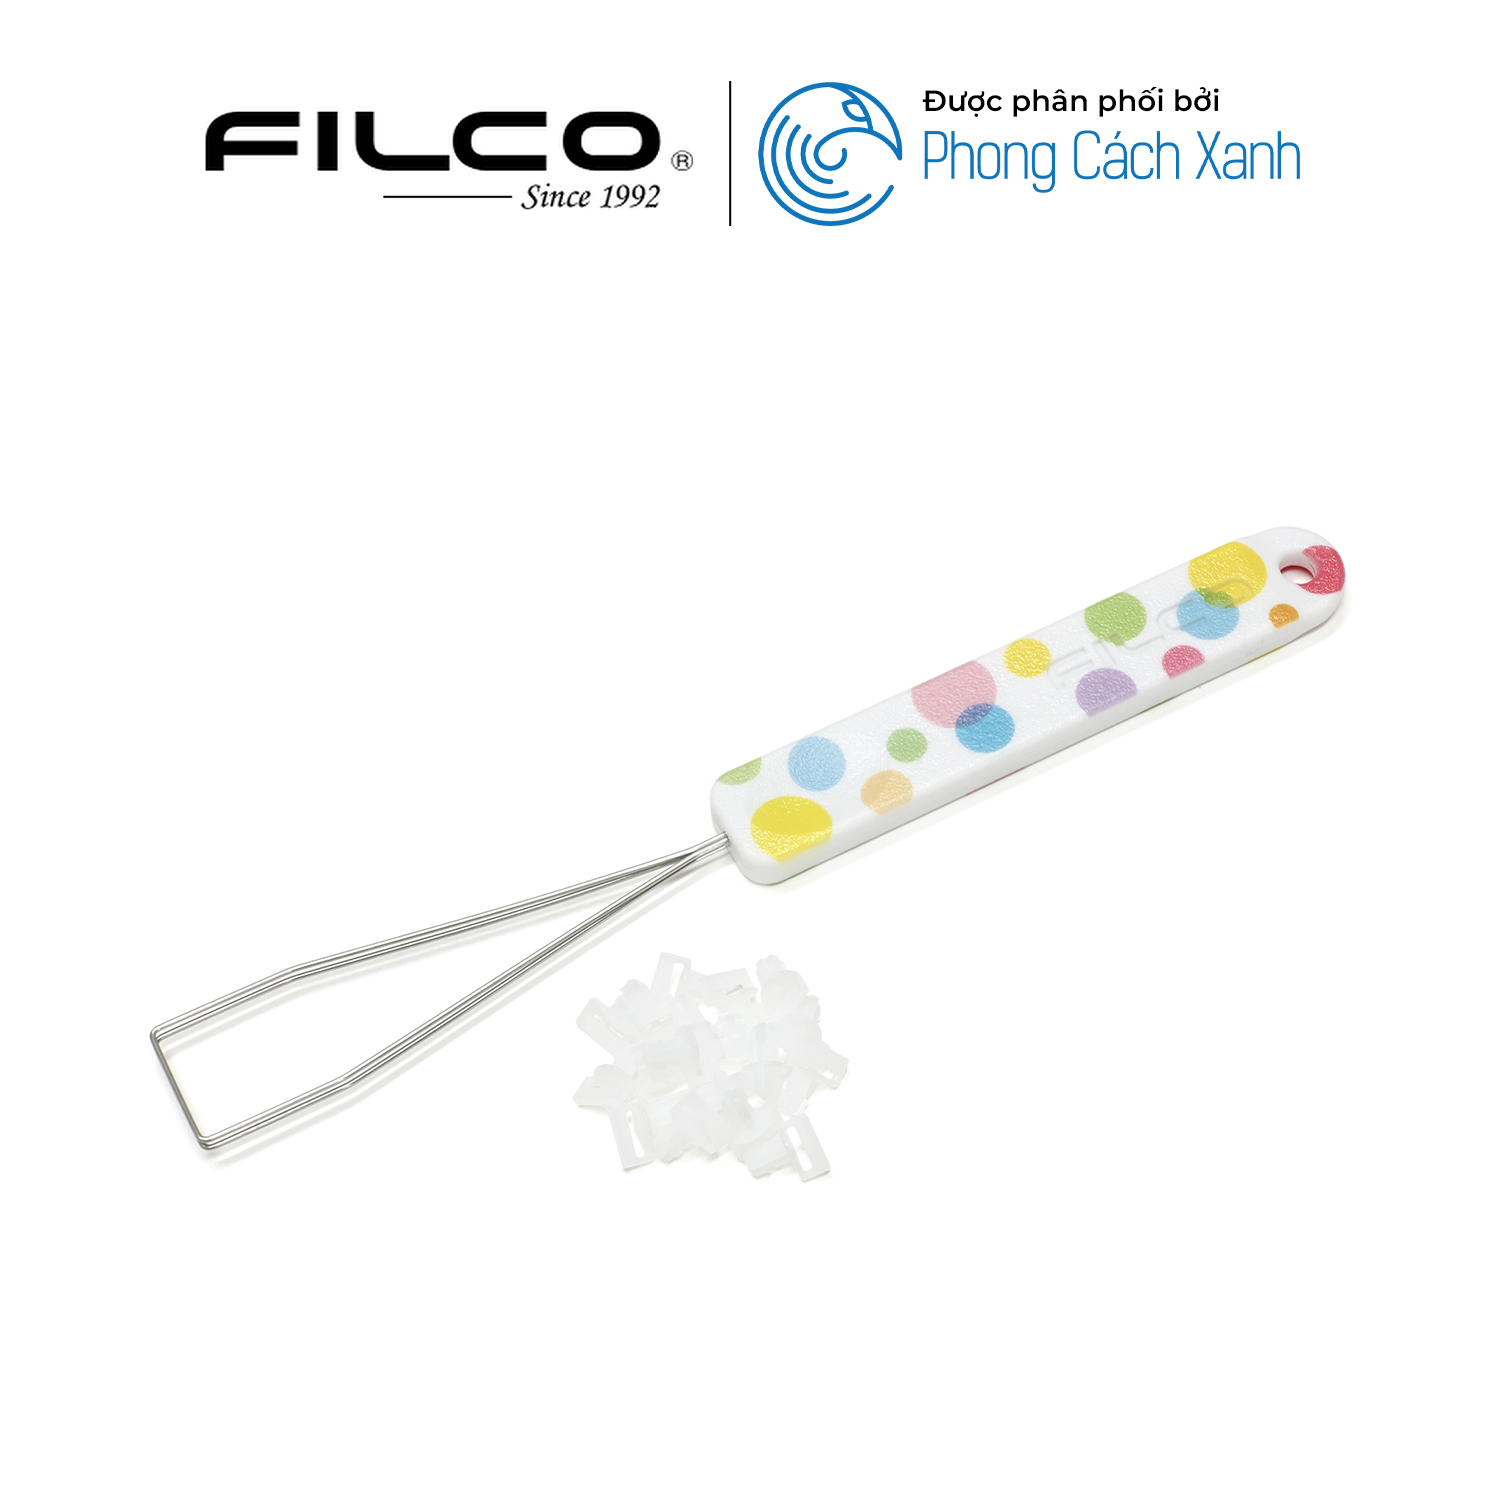 Bộ keycap Filco Macaron 104 phím - Chữ Ninja - Hàng Chính Hãng